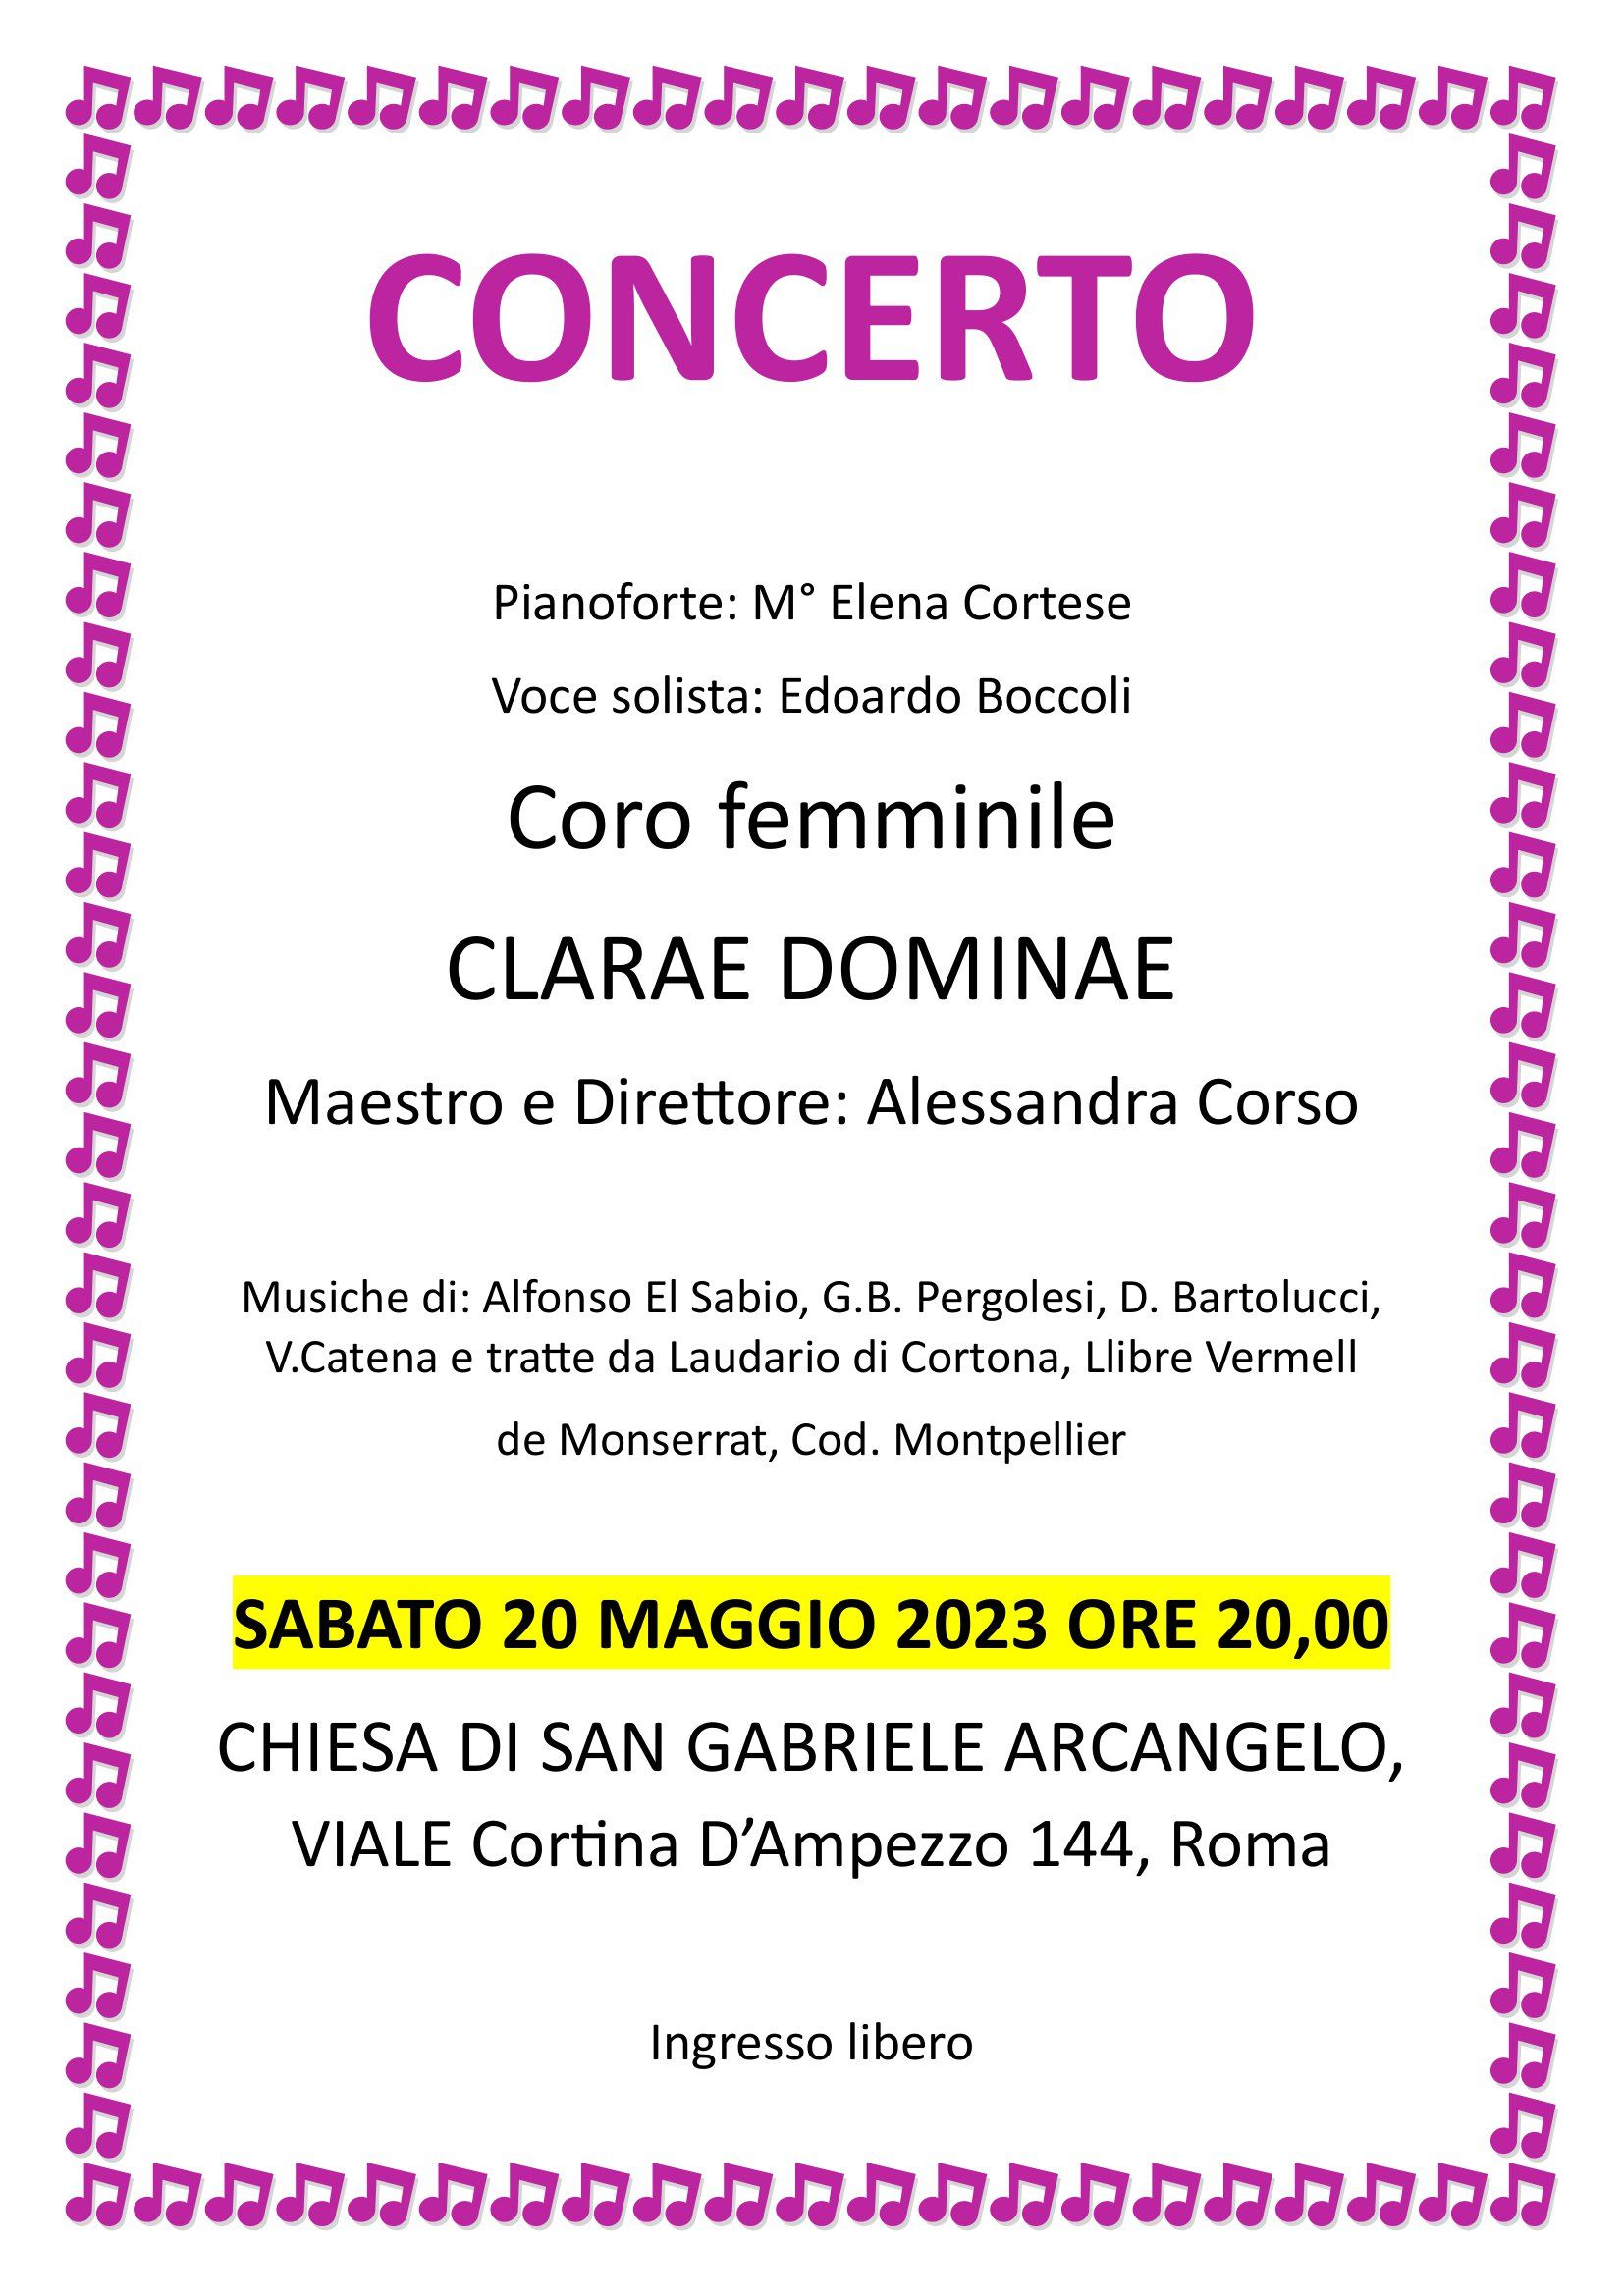 Immagine per Concerto - Coro femminile CLARAE DOMINAE